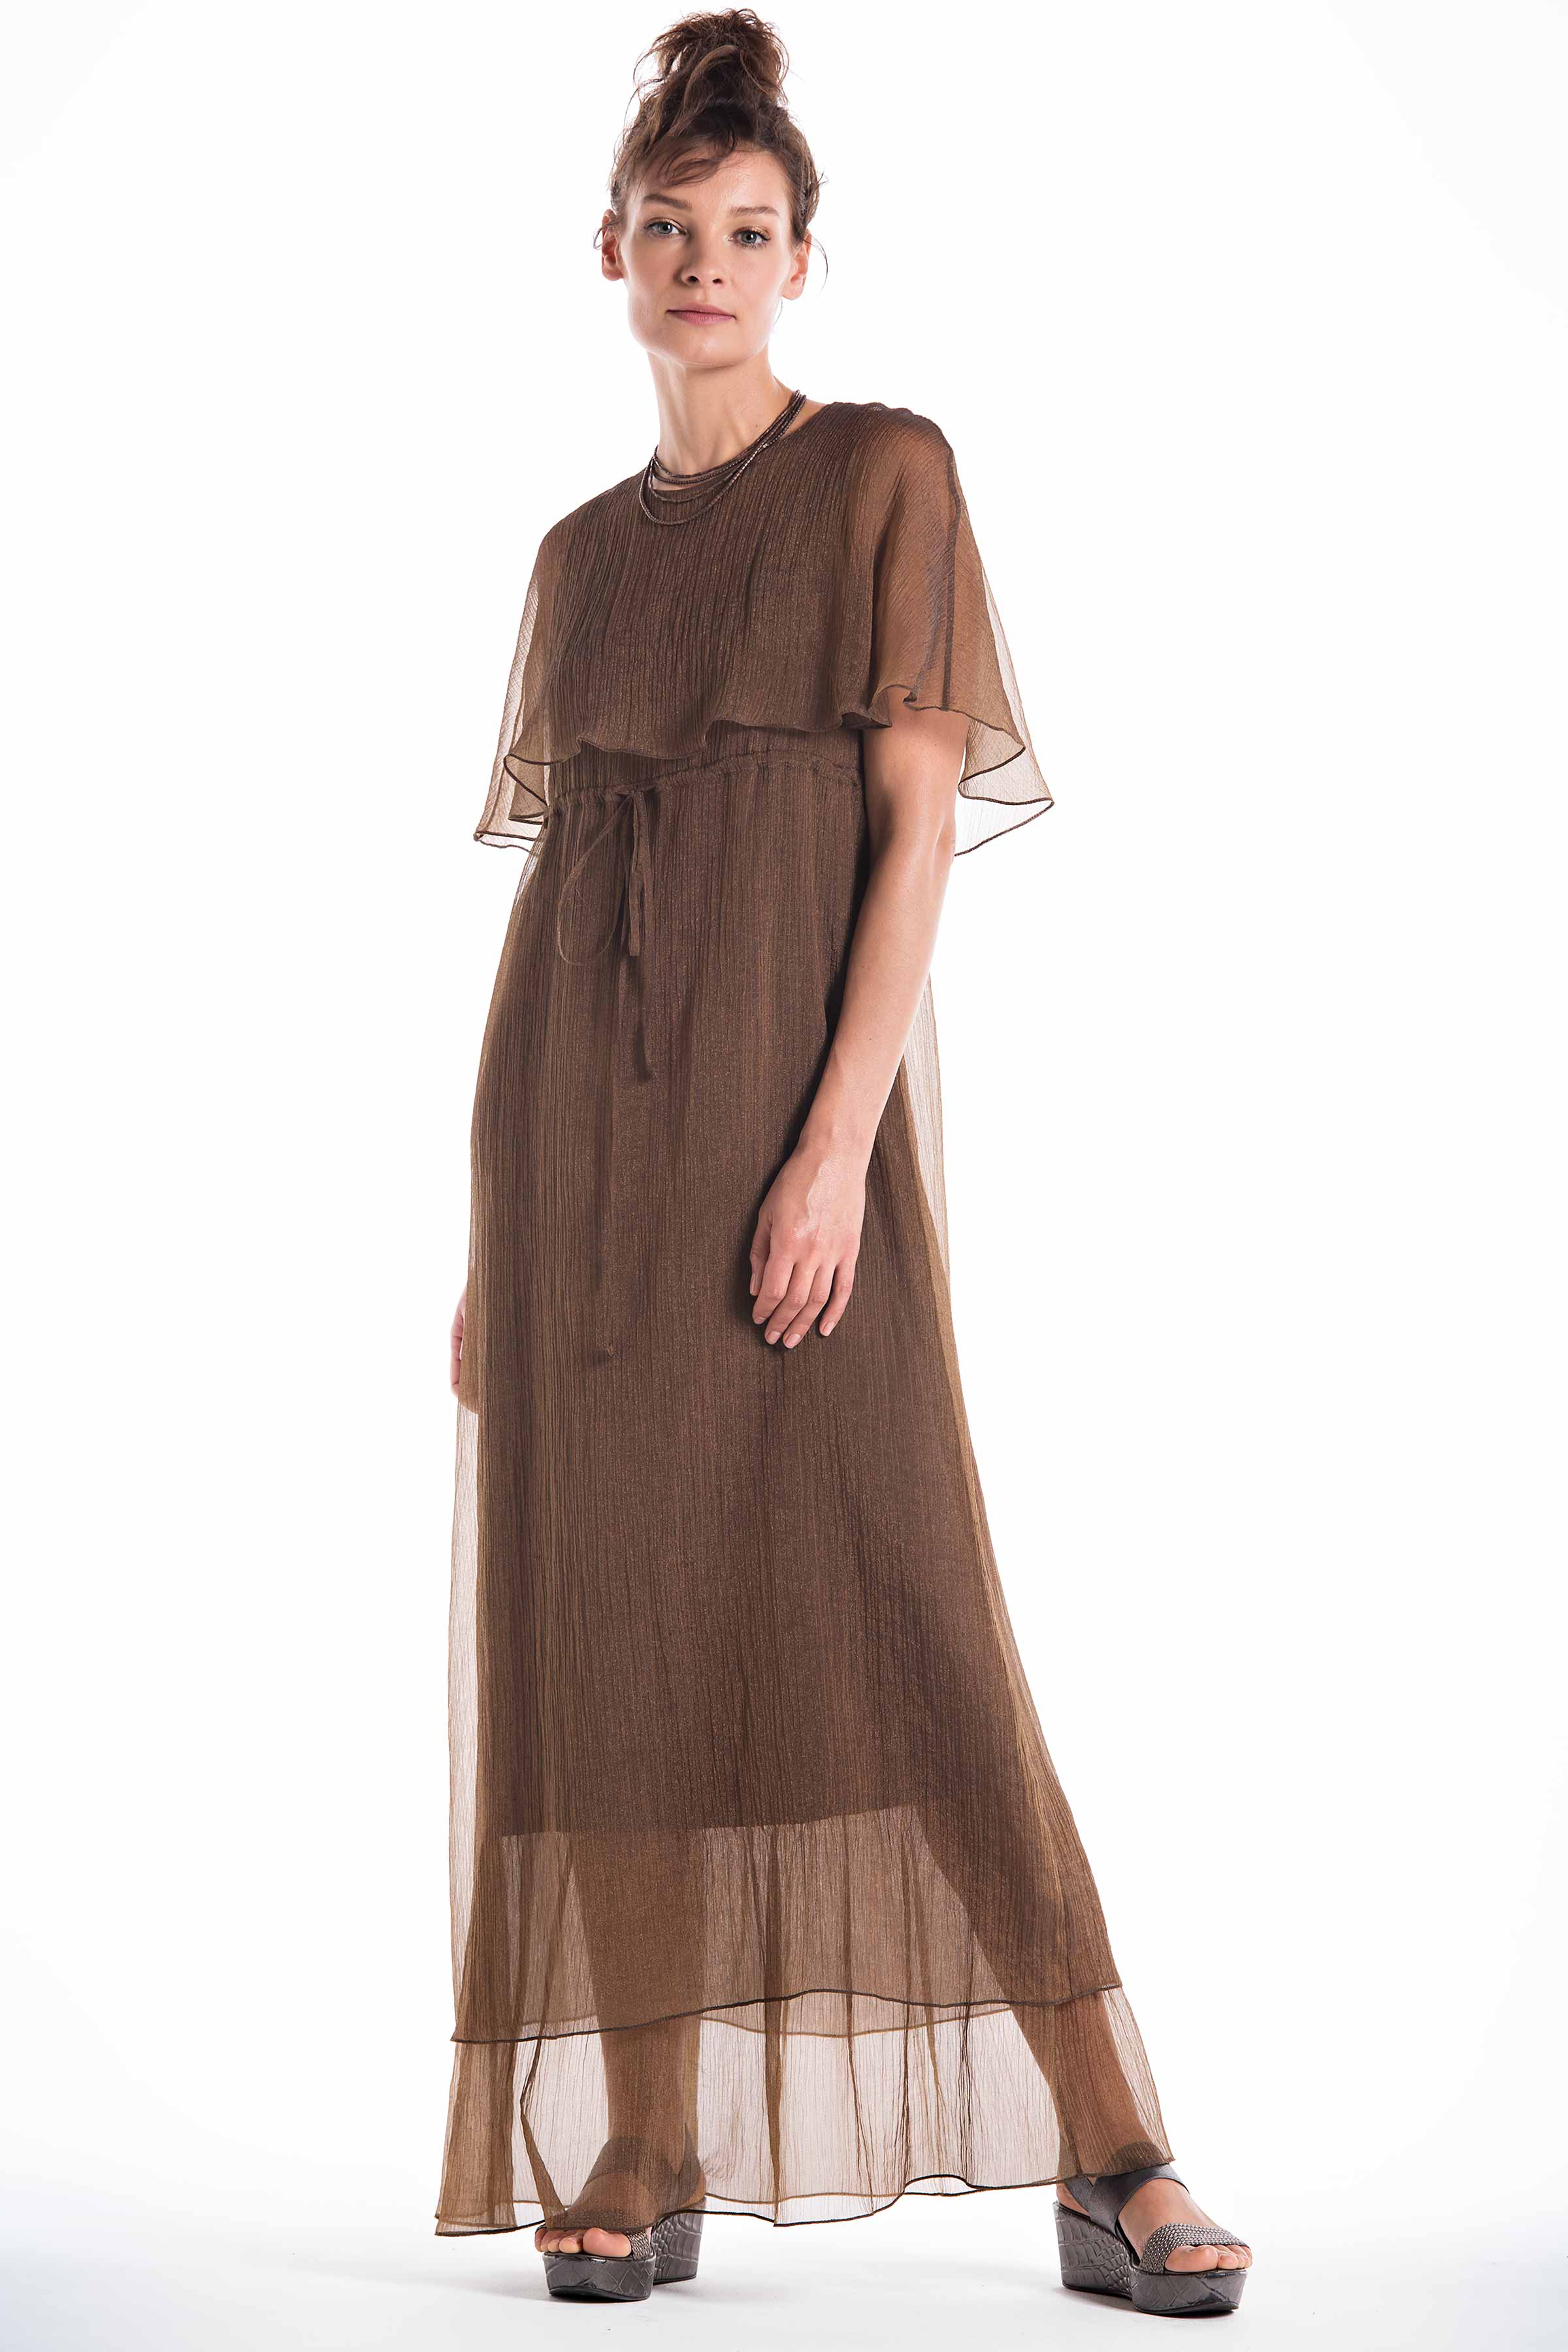 Платье с пелериной длинное, жатка-вуаль 89 Темная бронза (bronze  fonce) от Lesel (Лесель)! Заказывайте по ✆ 8 (800) 777 02 37